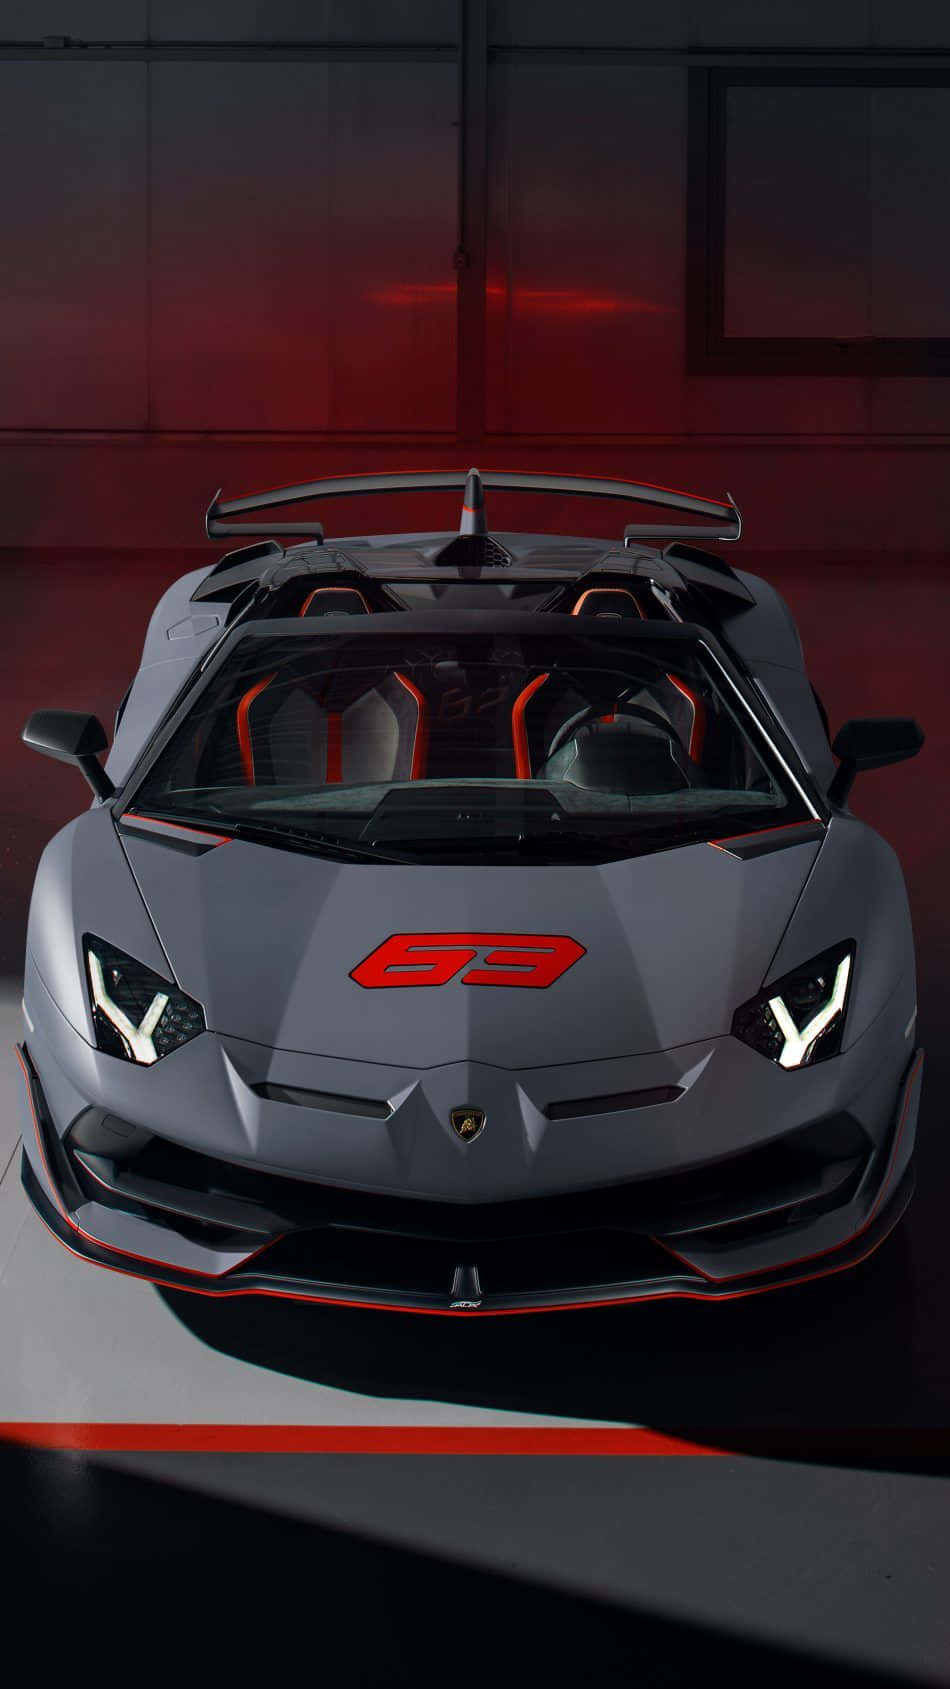 Lyxpå Högsta Nivå: Pixel 3 Xl Lamborghini-upplagan.